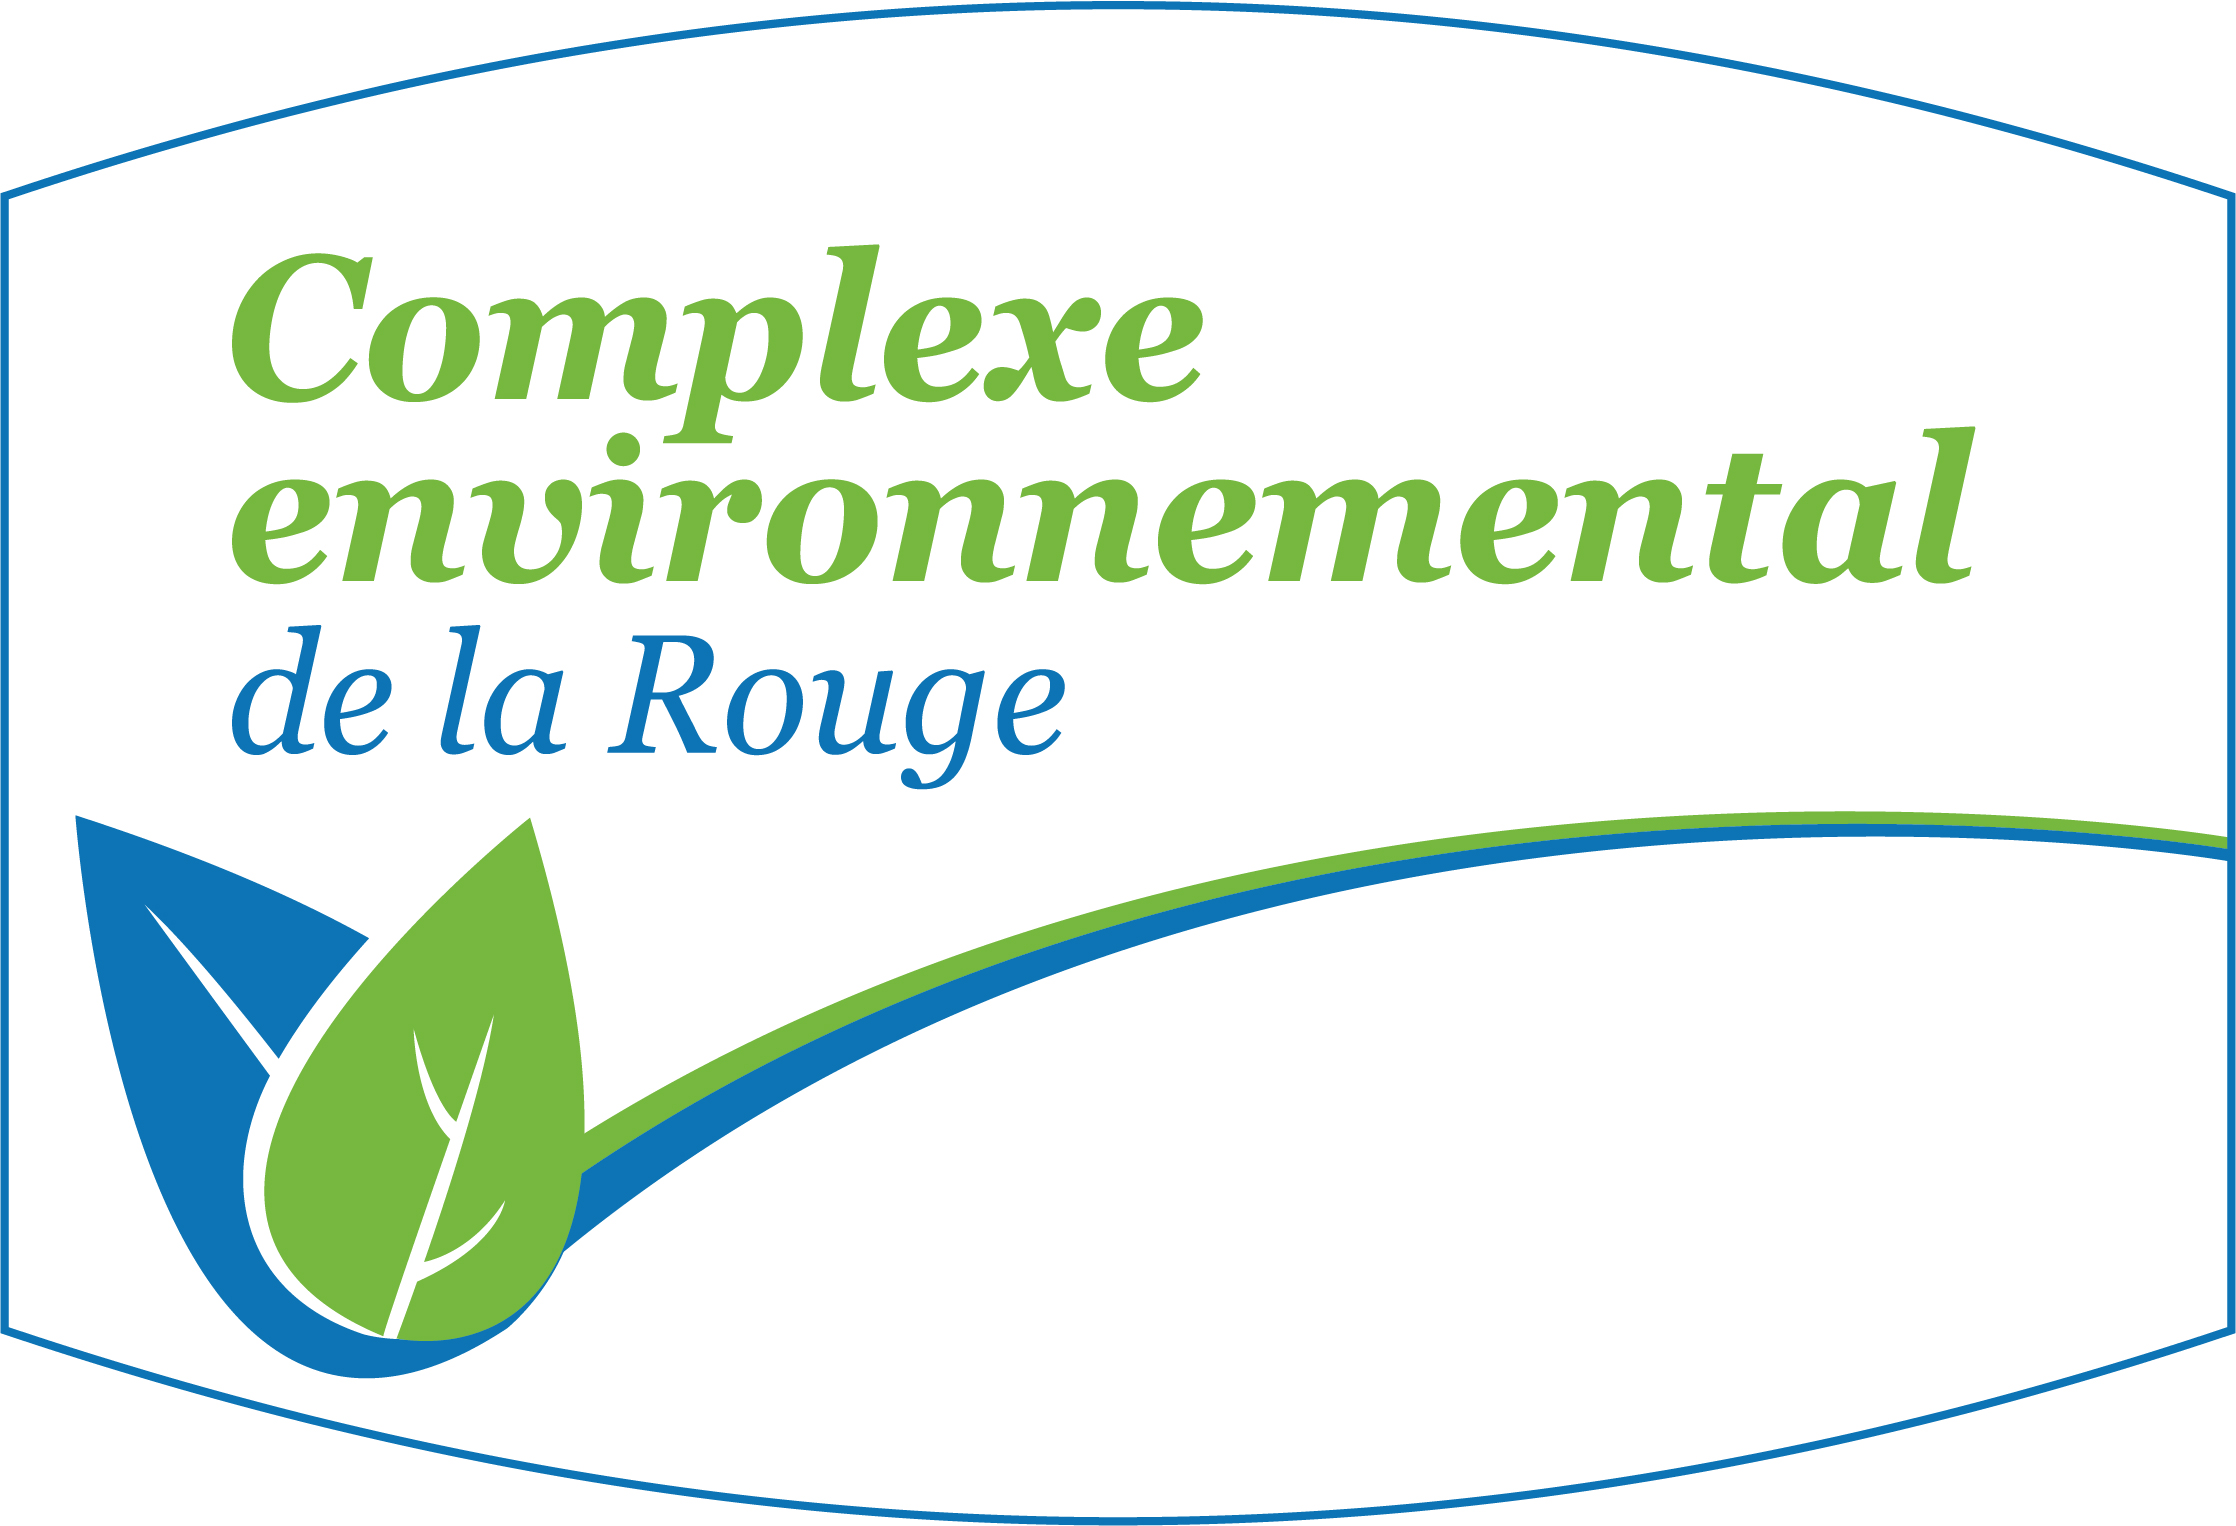 La Rouge Environmental Complex